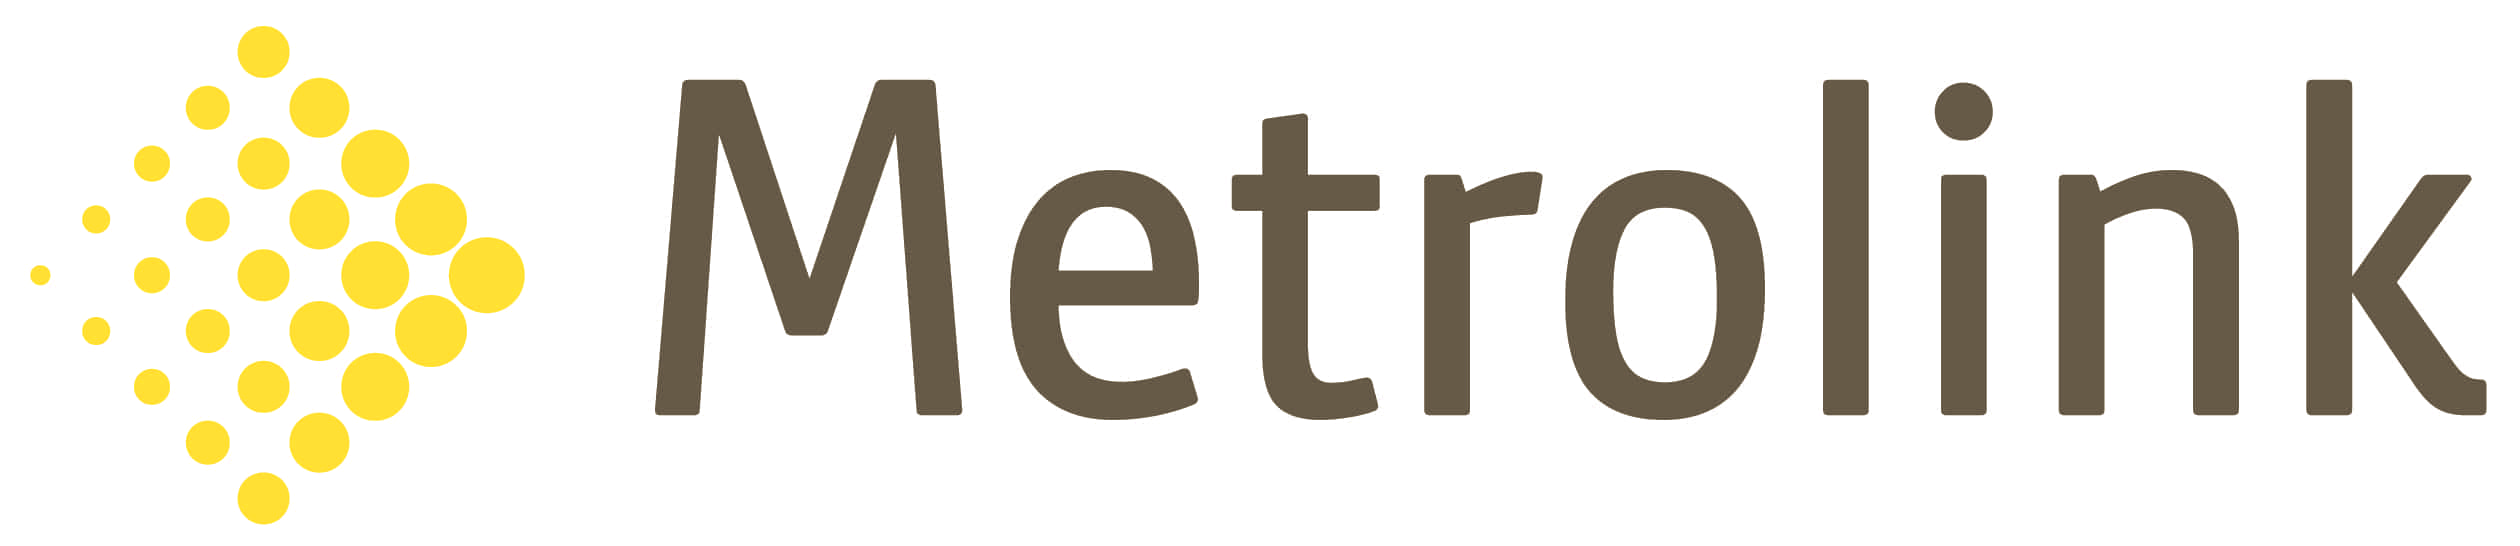 Metrolink Logo - Metrolink Special Offer. Metrolink Special Offer